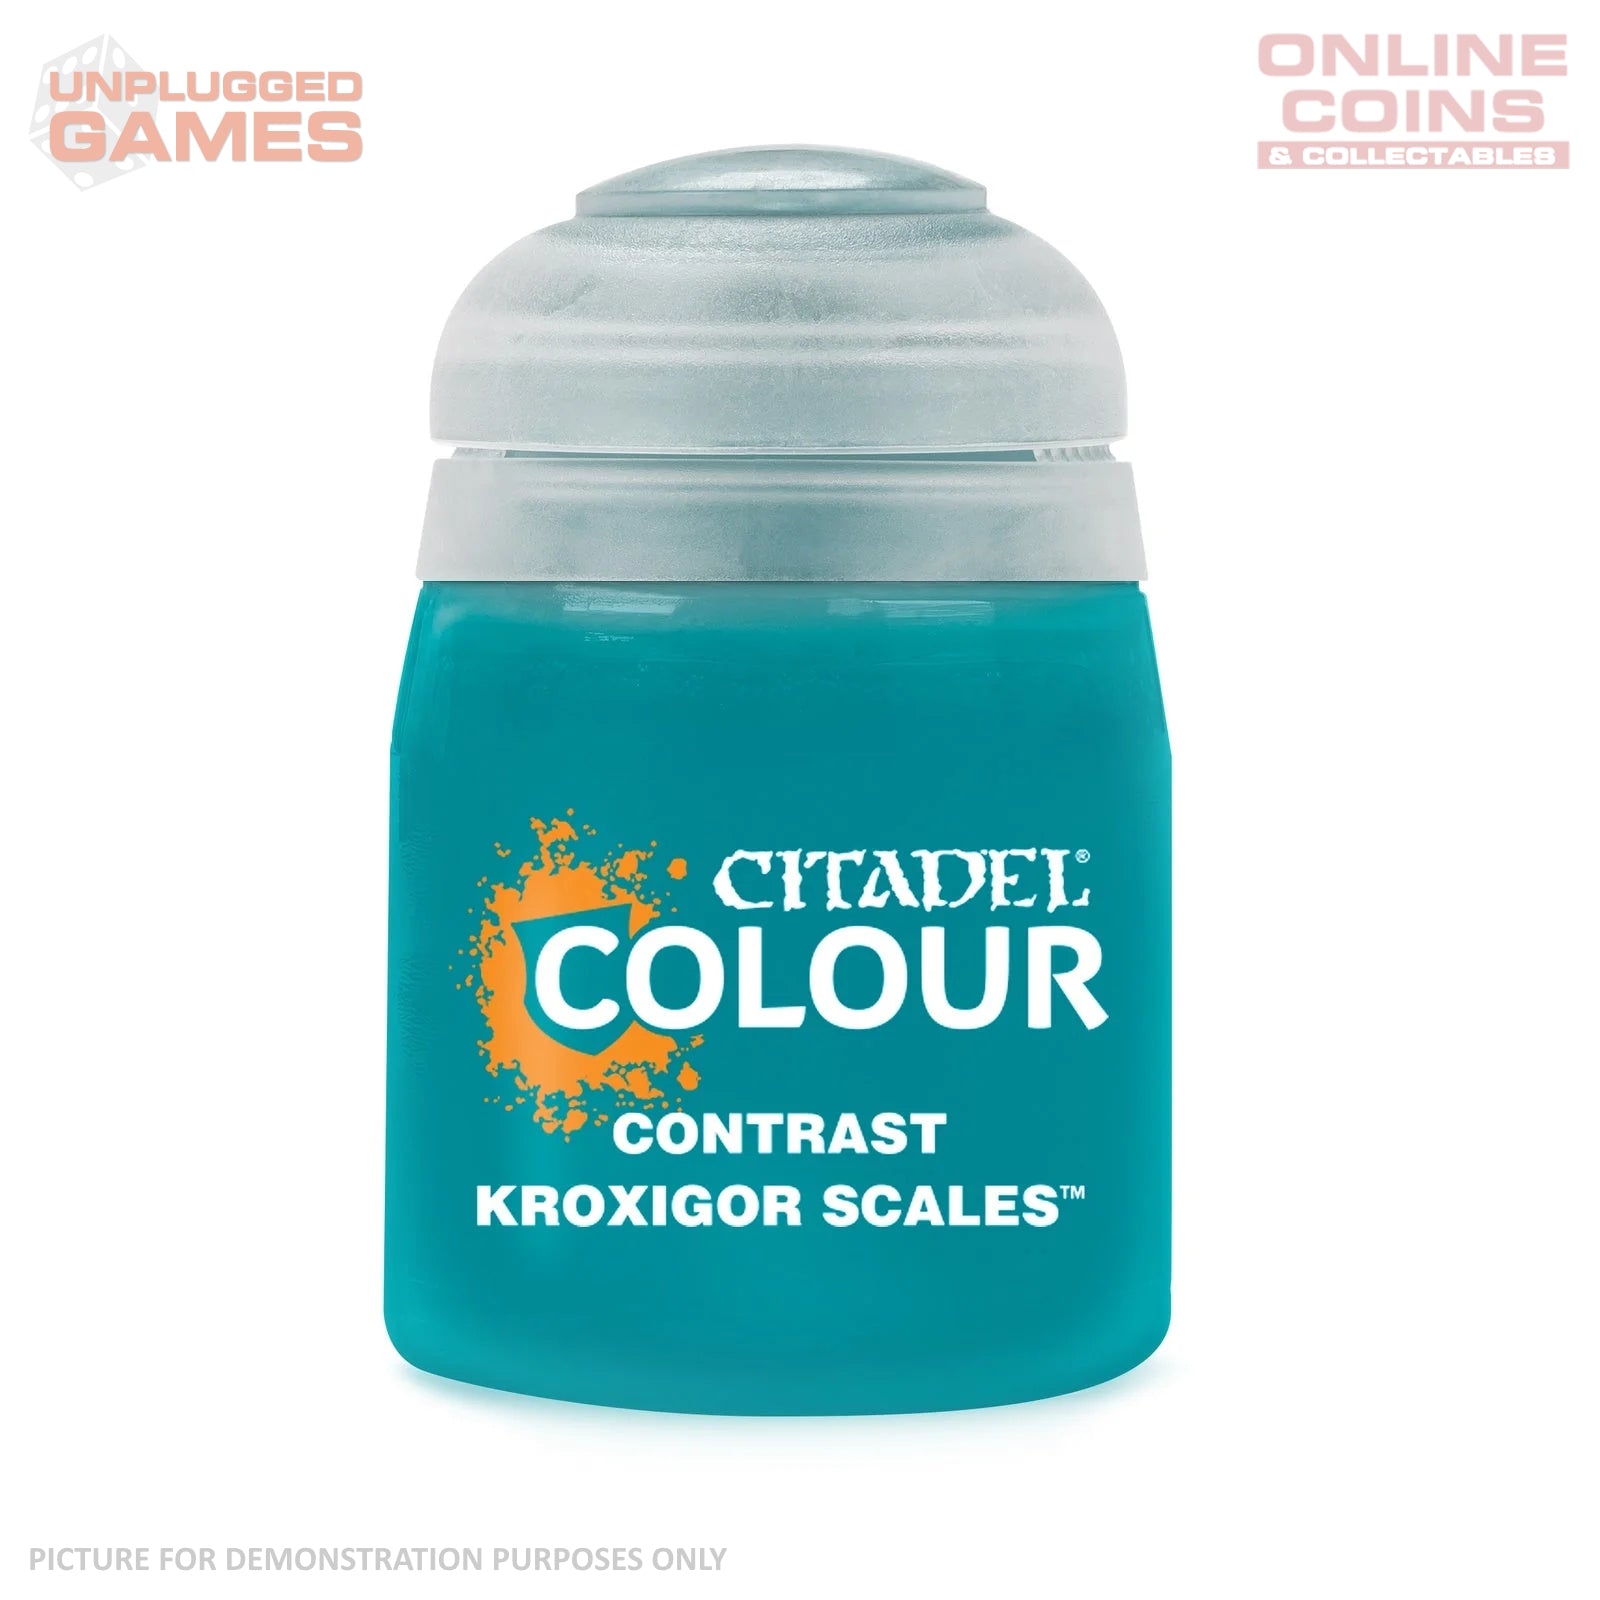 Citadel Contrast - 29-55 Kroxigor Scales